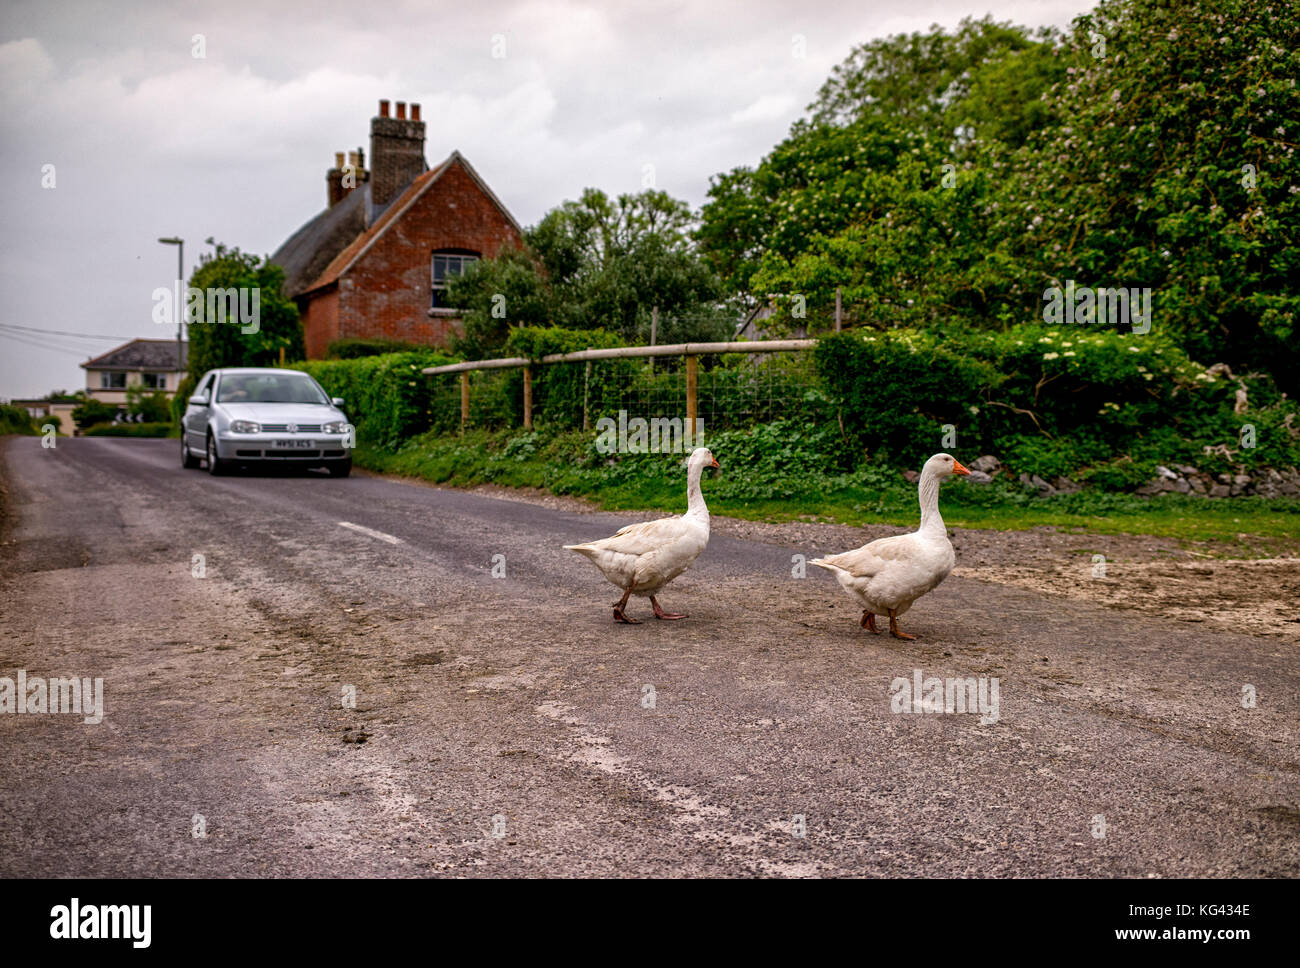 Deux oies traversant une route de campagne dans la région de Hampshire sur le chemin de la ferme, un conducteur s'arrête pour les laisser traverser la route. Banque D'Images